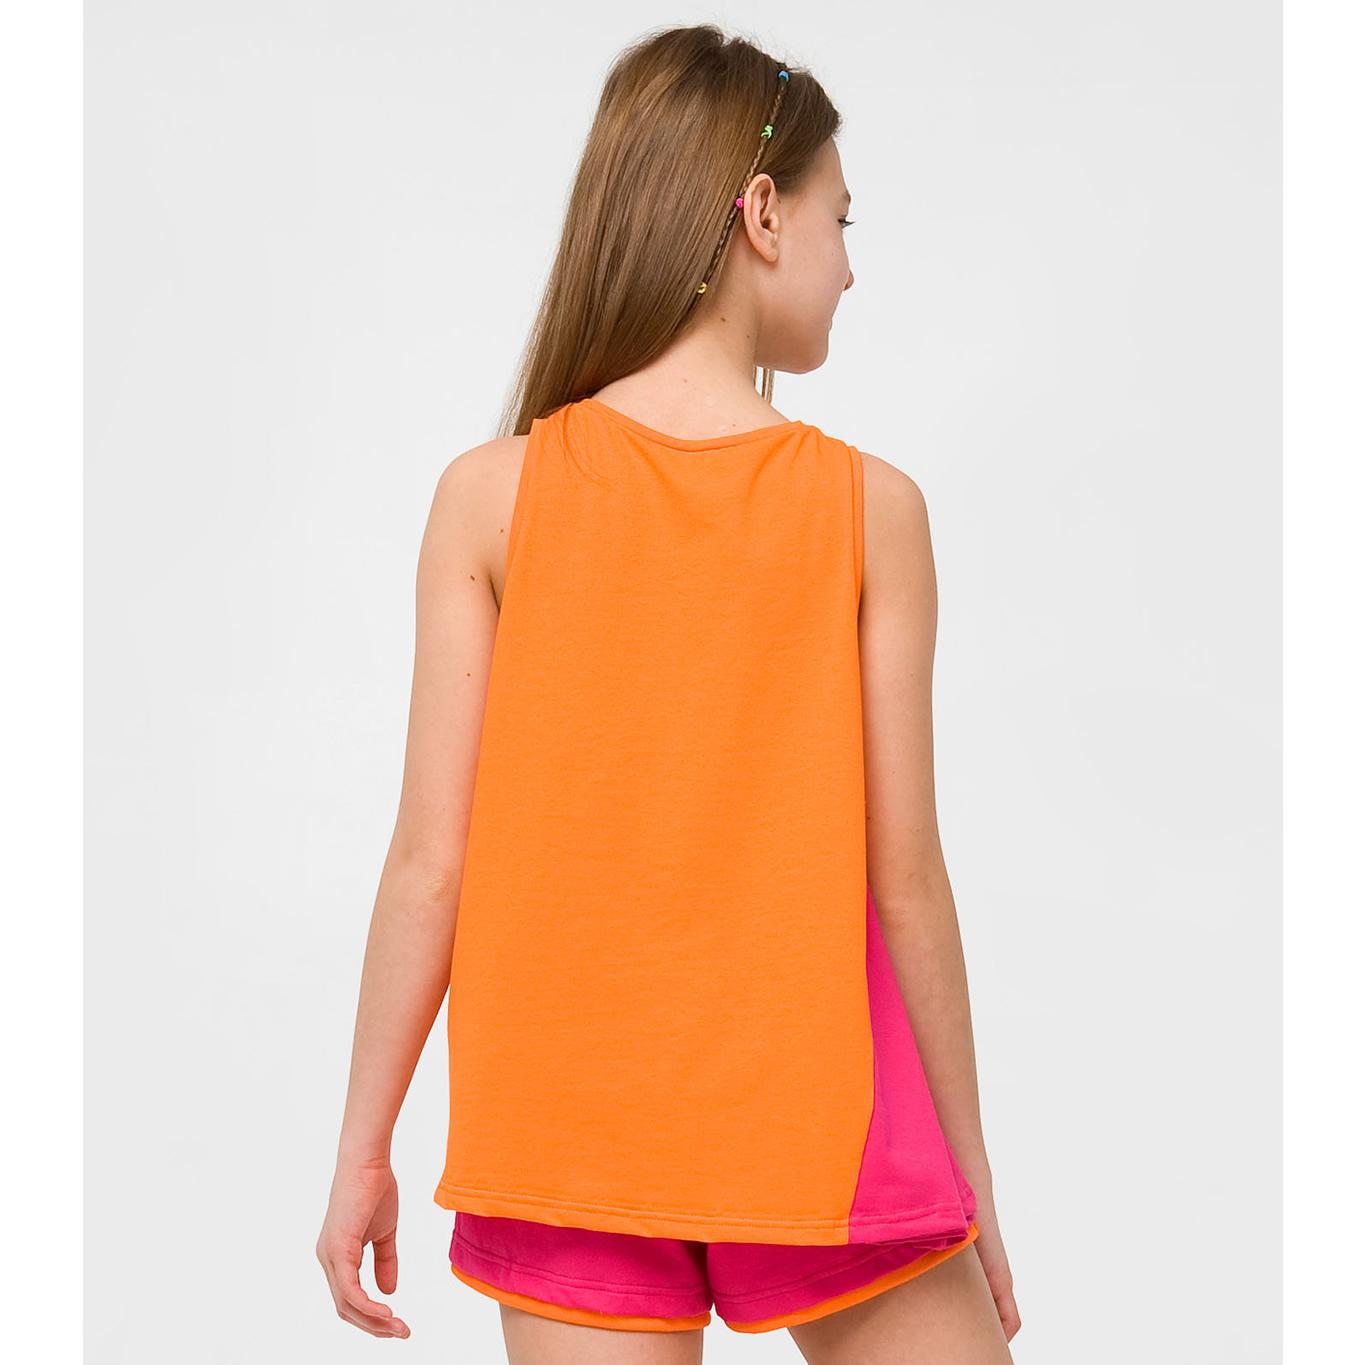 Майка-блуза для дівчинки Рожевий цитрус, цитрус (110639), Smil (Смил)